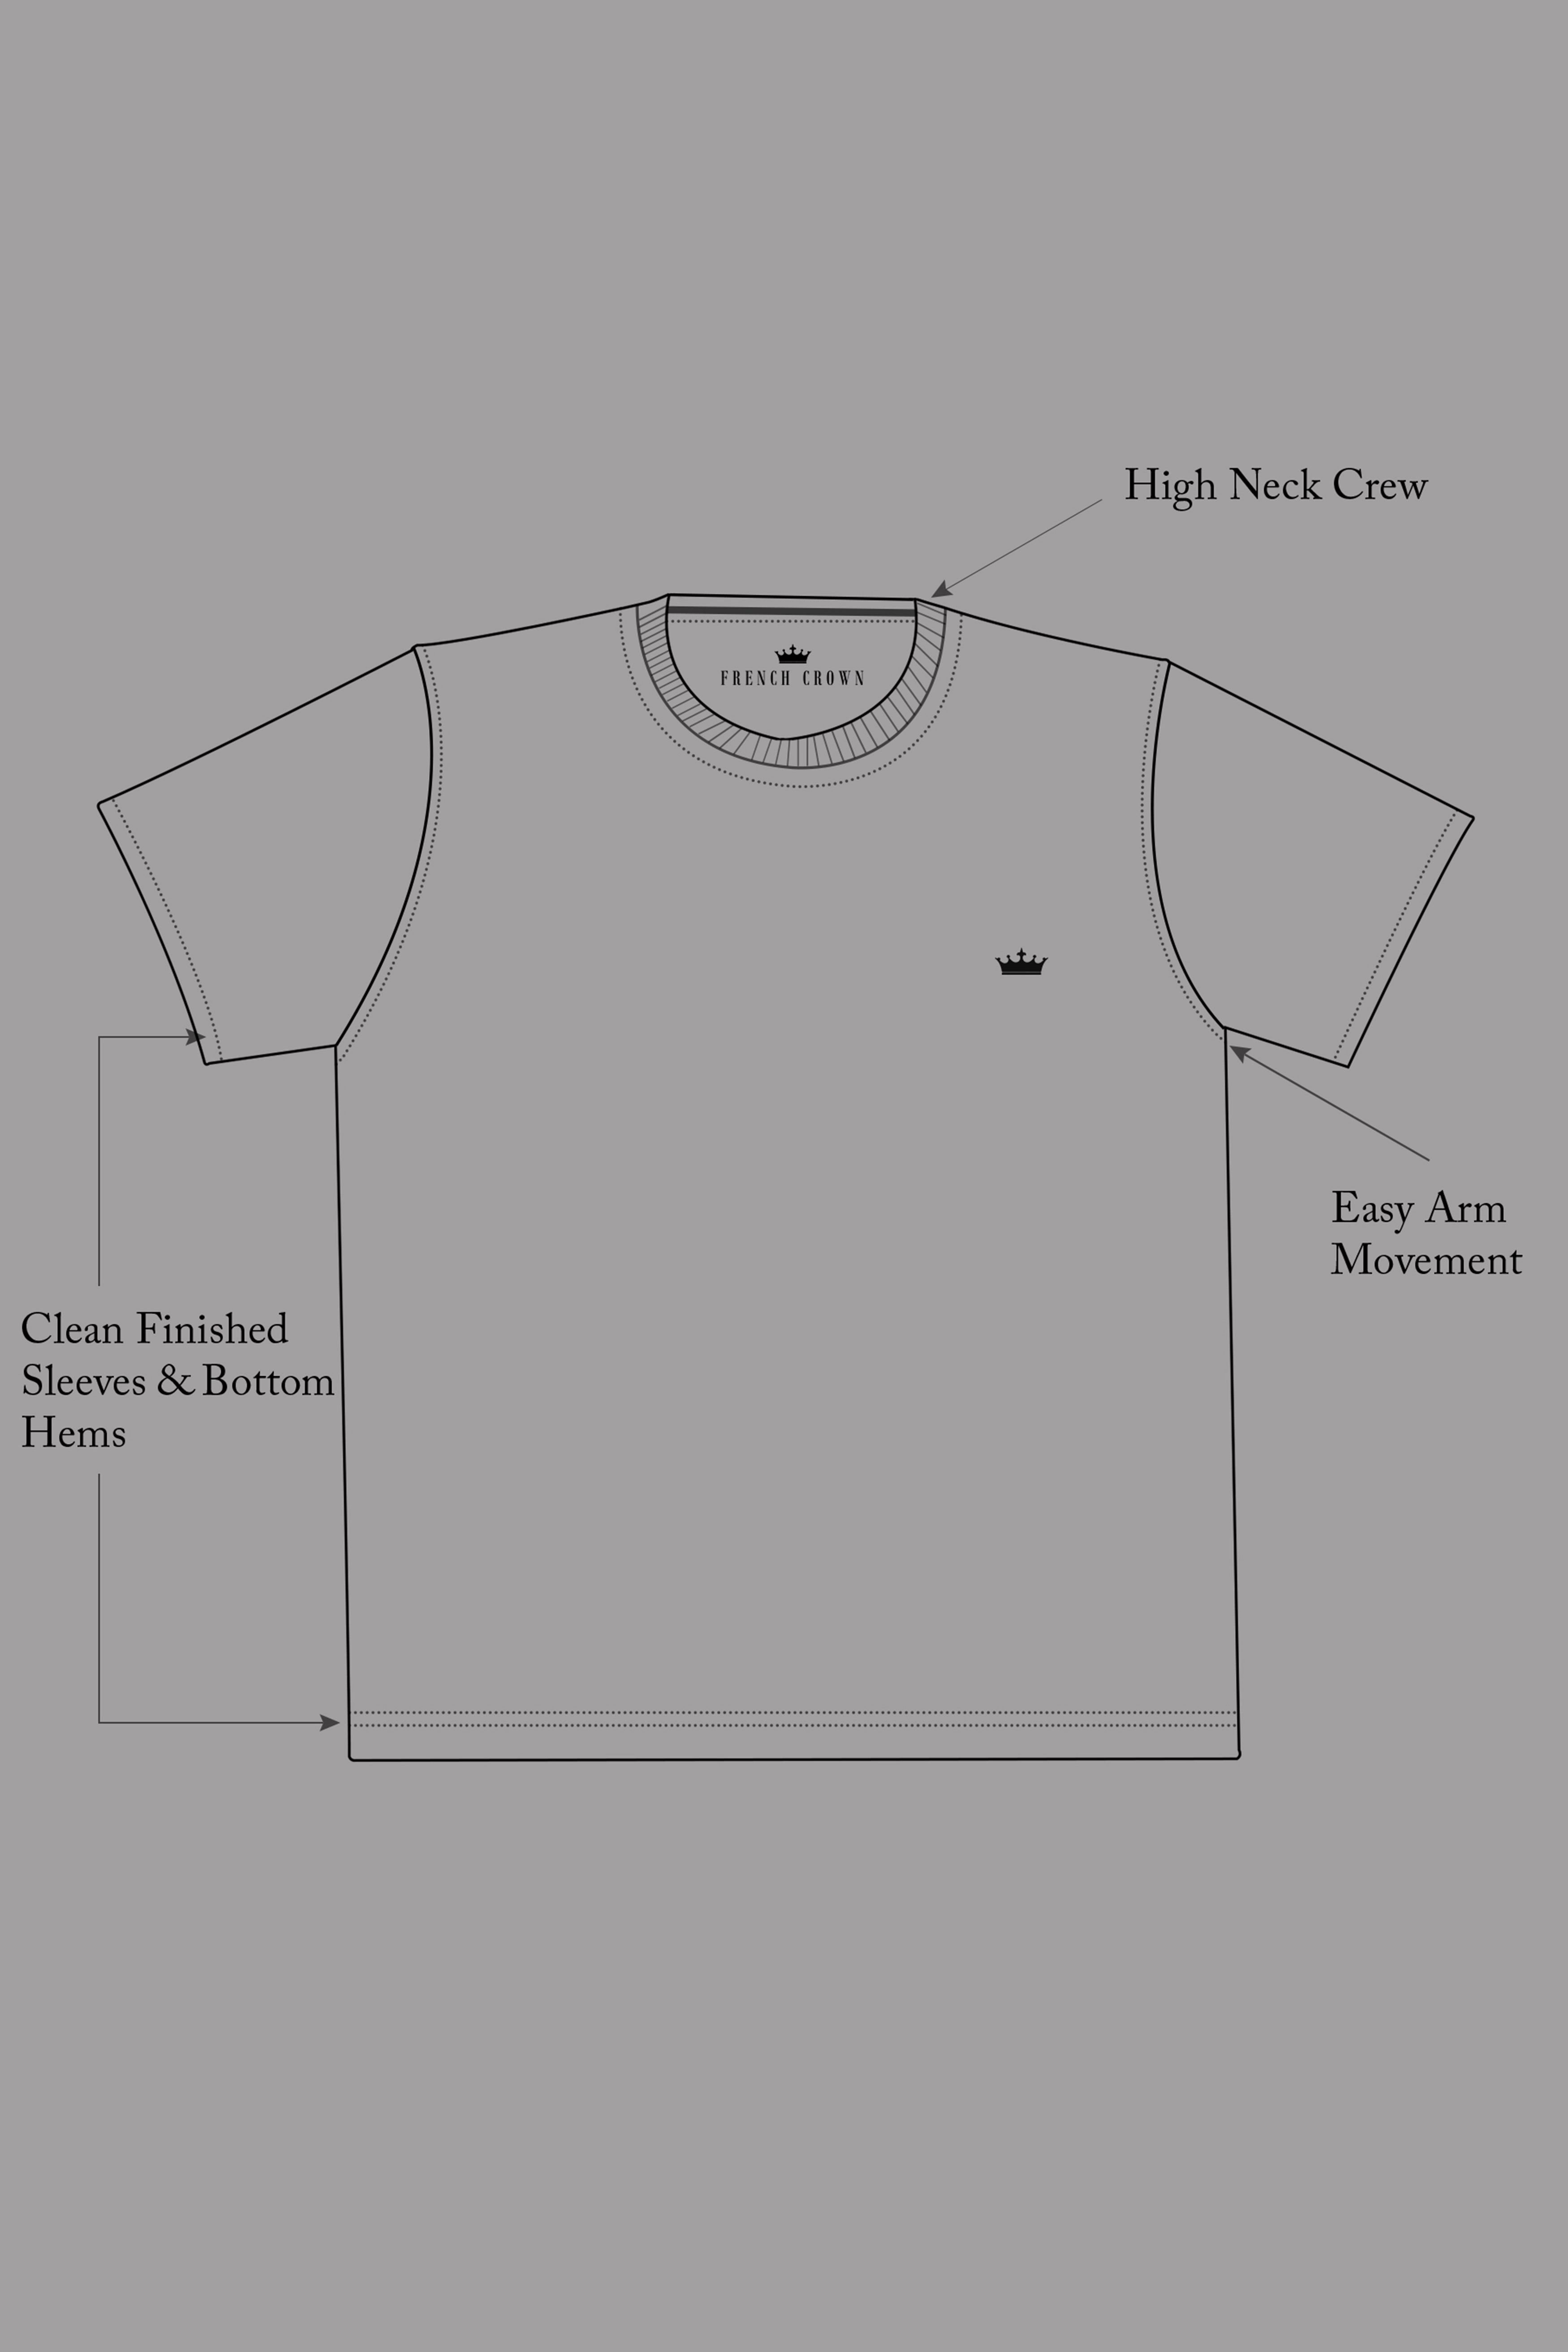 Jade Black Premium Cotton T-shirt